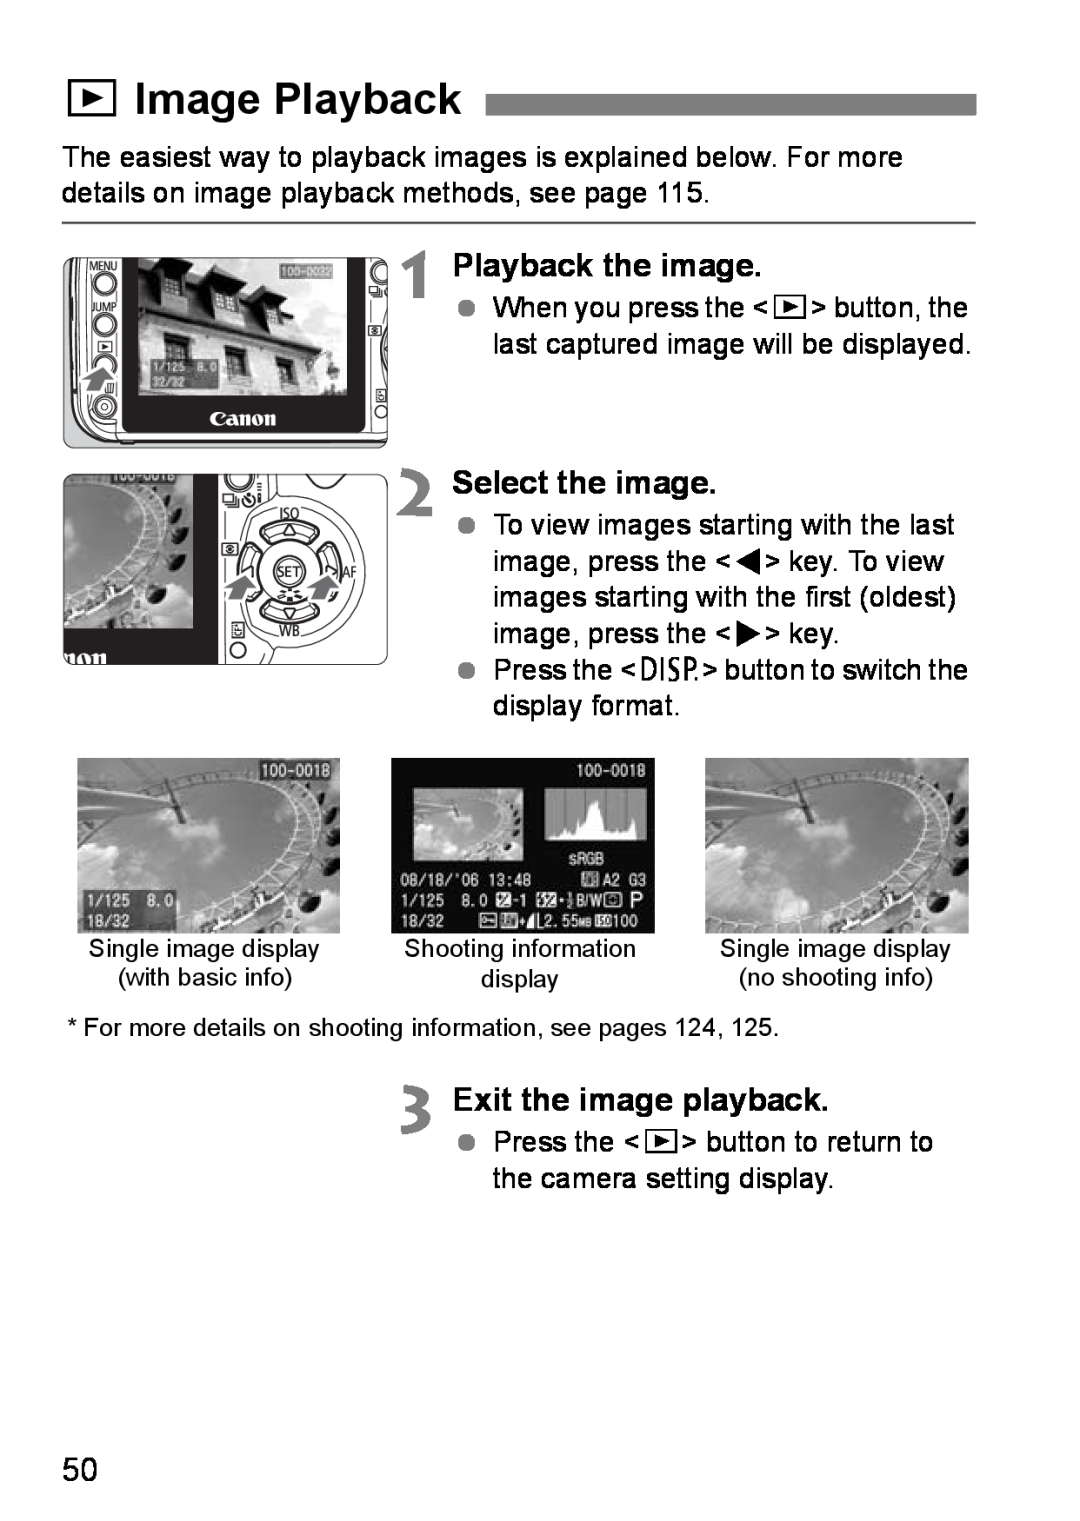 Canon EOS DIGITAL REBEL XTI xImage Playback, Playback the image, Select the image, Exit the image playback 